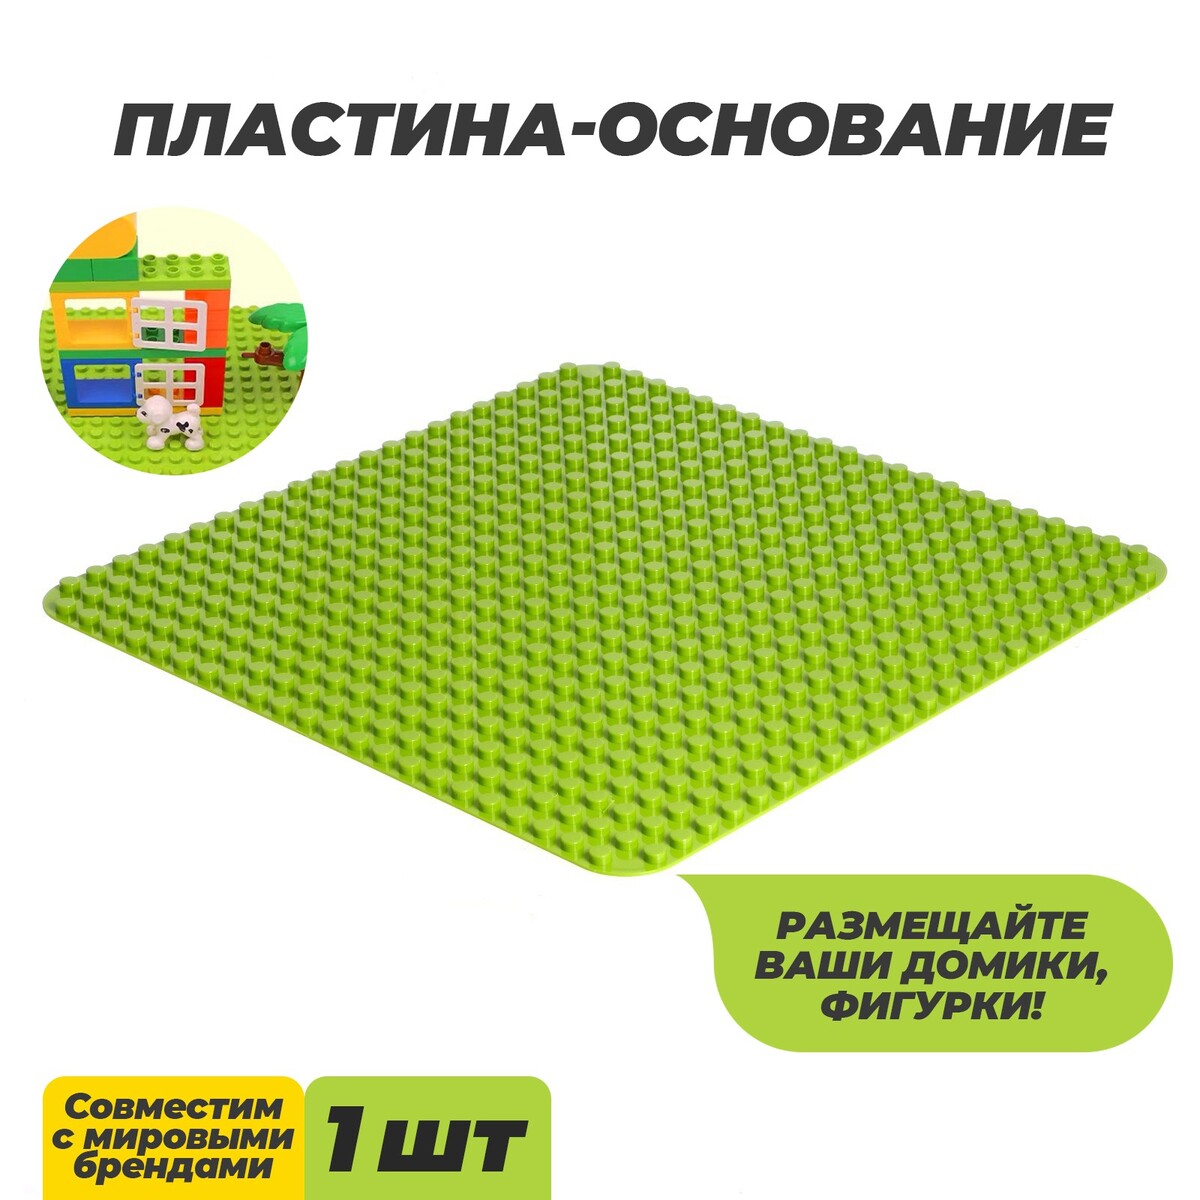 Пластина-основание для конструктора, 38,4 × 38,4 см, цвет салатовый пластина перекрытие для конструктора 16 х 24 см зеленый